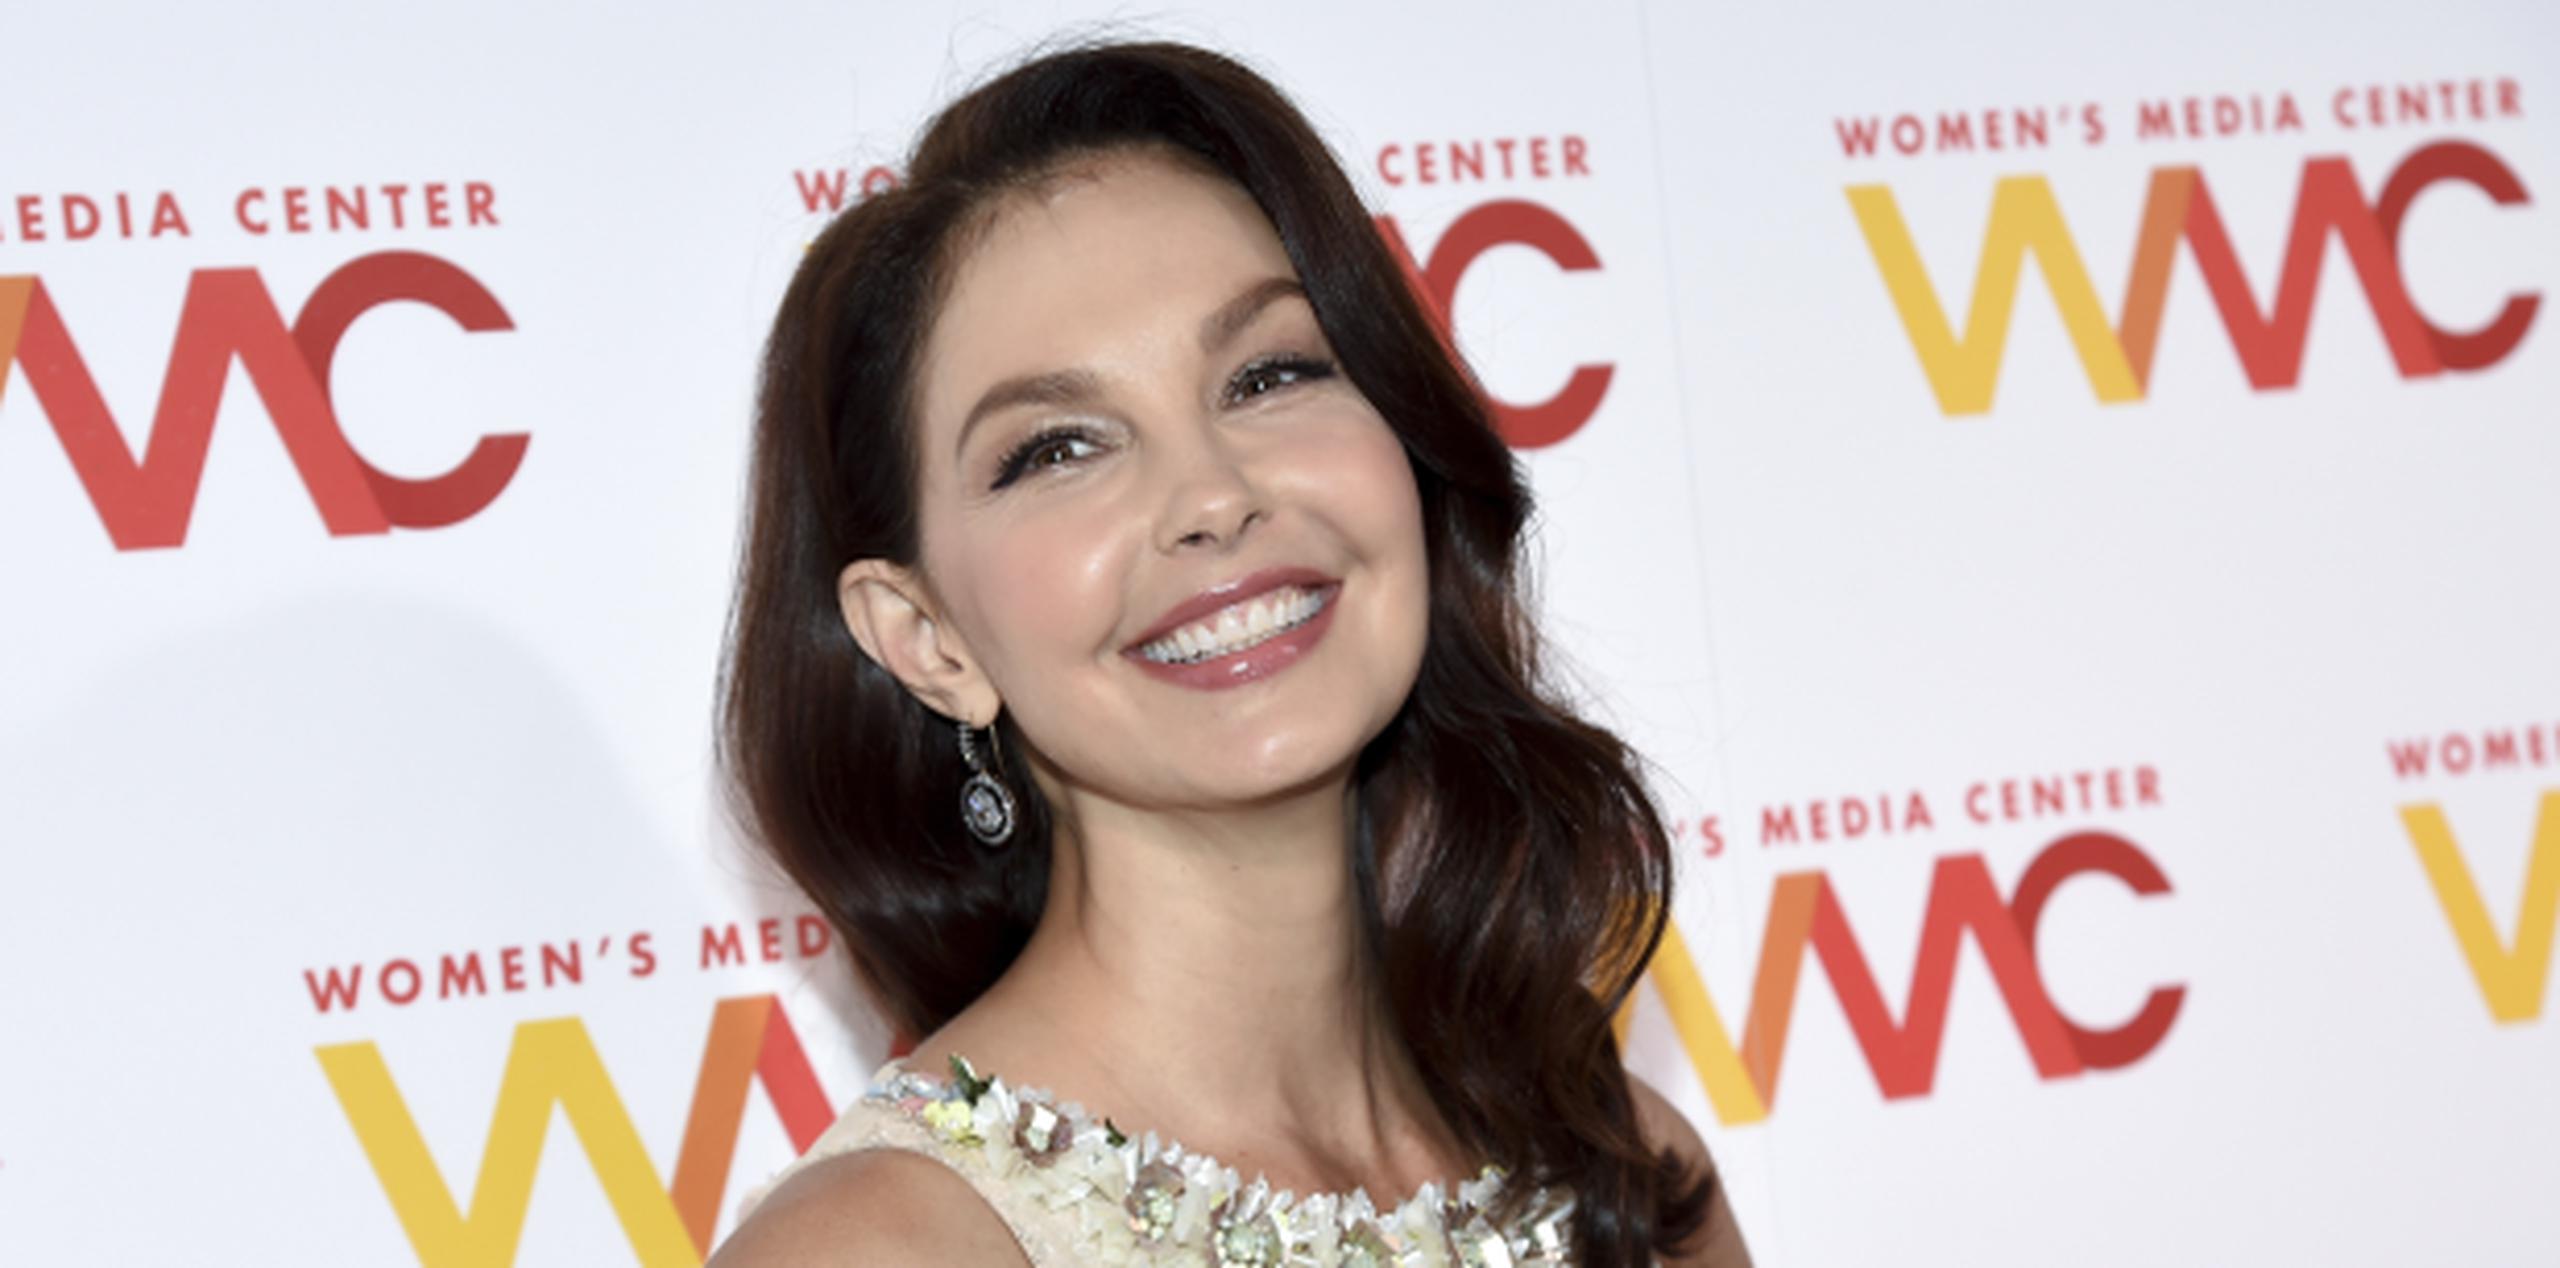 Le dijo que era "una pesadilla" trabajar con la actriz Ashley Judd. (Archivo)